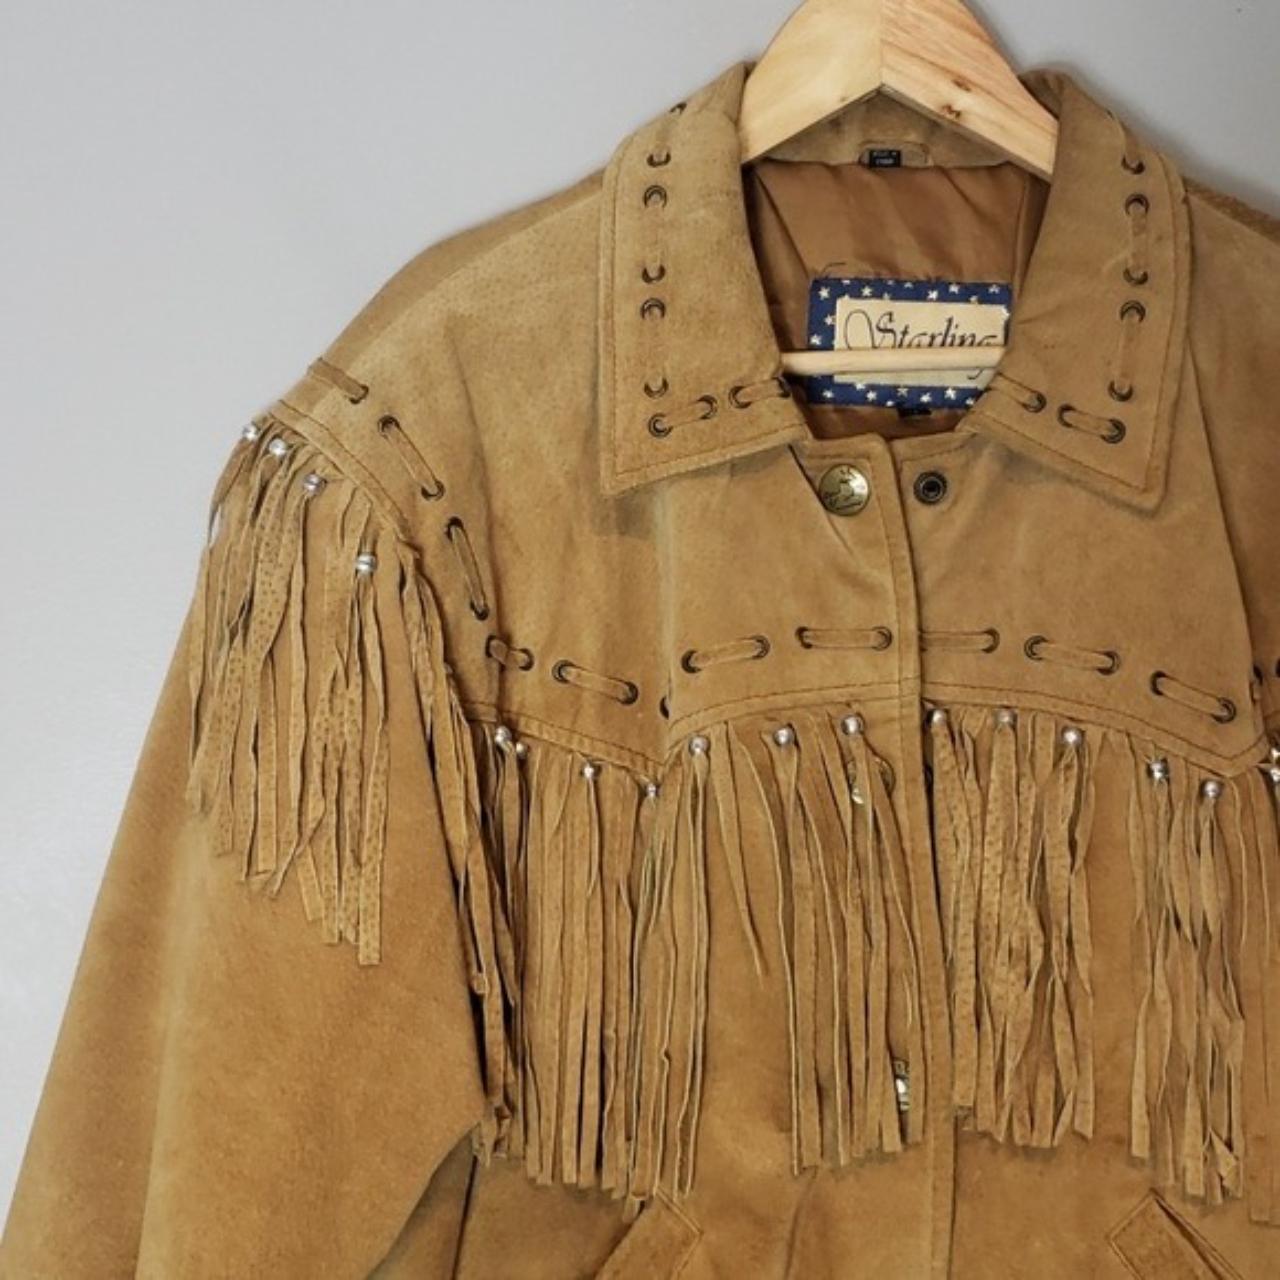 Western Leather Jacket Starling Vintage Fringe Brown... - Depop